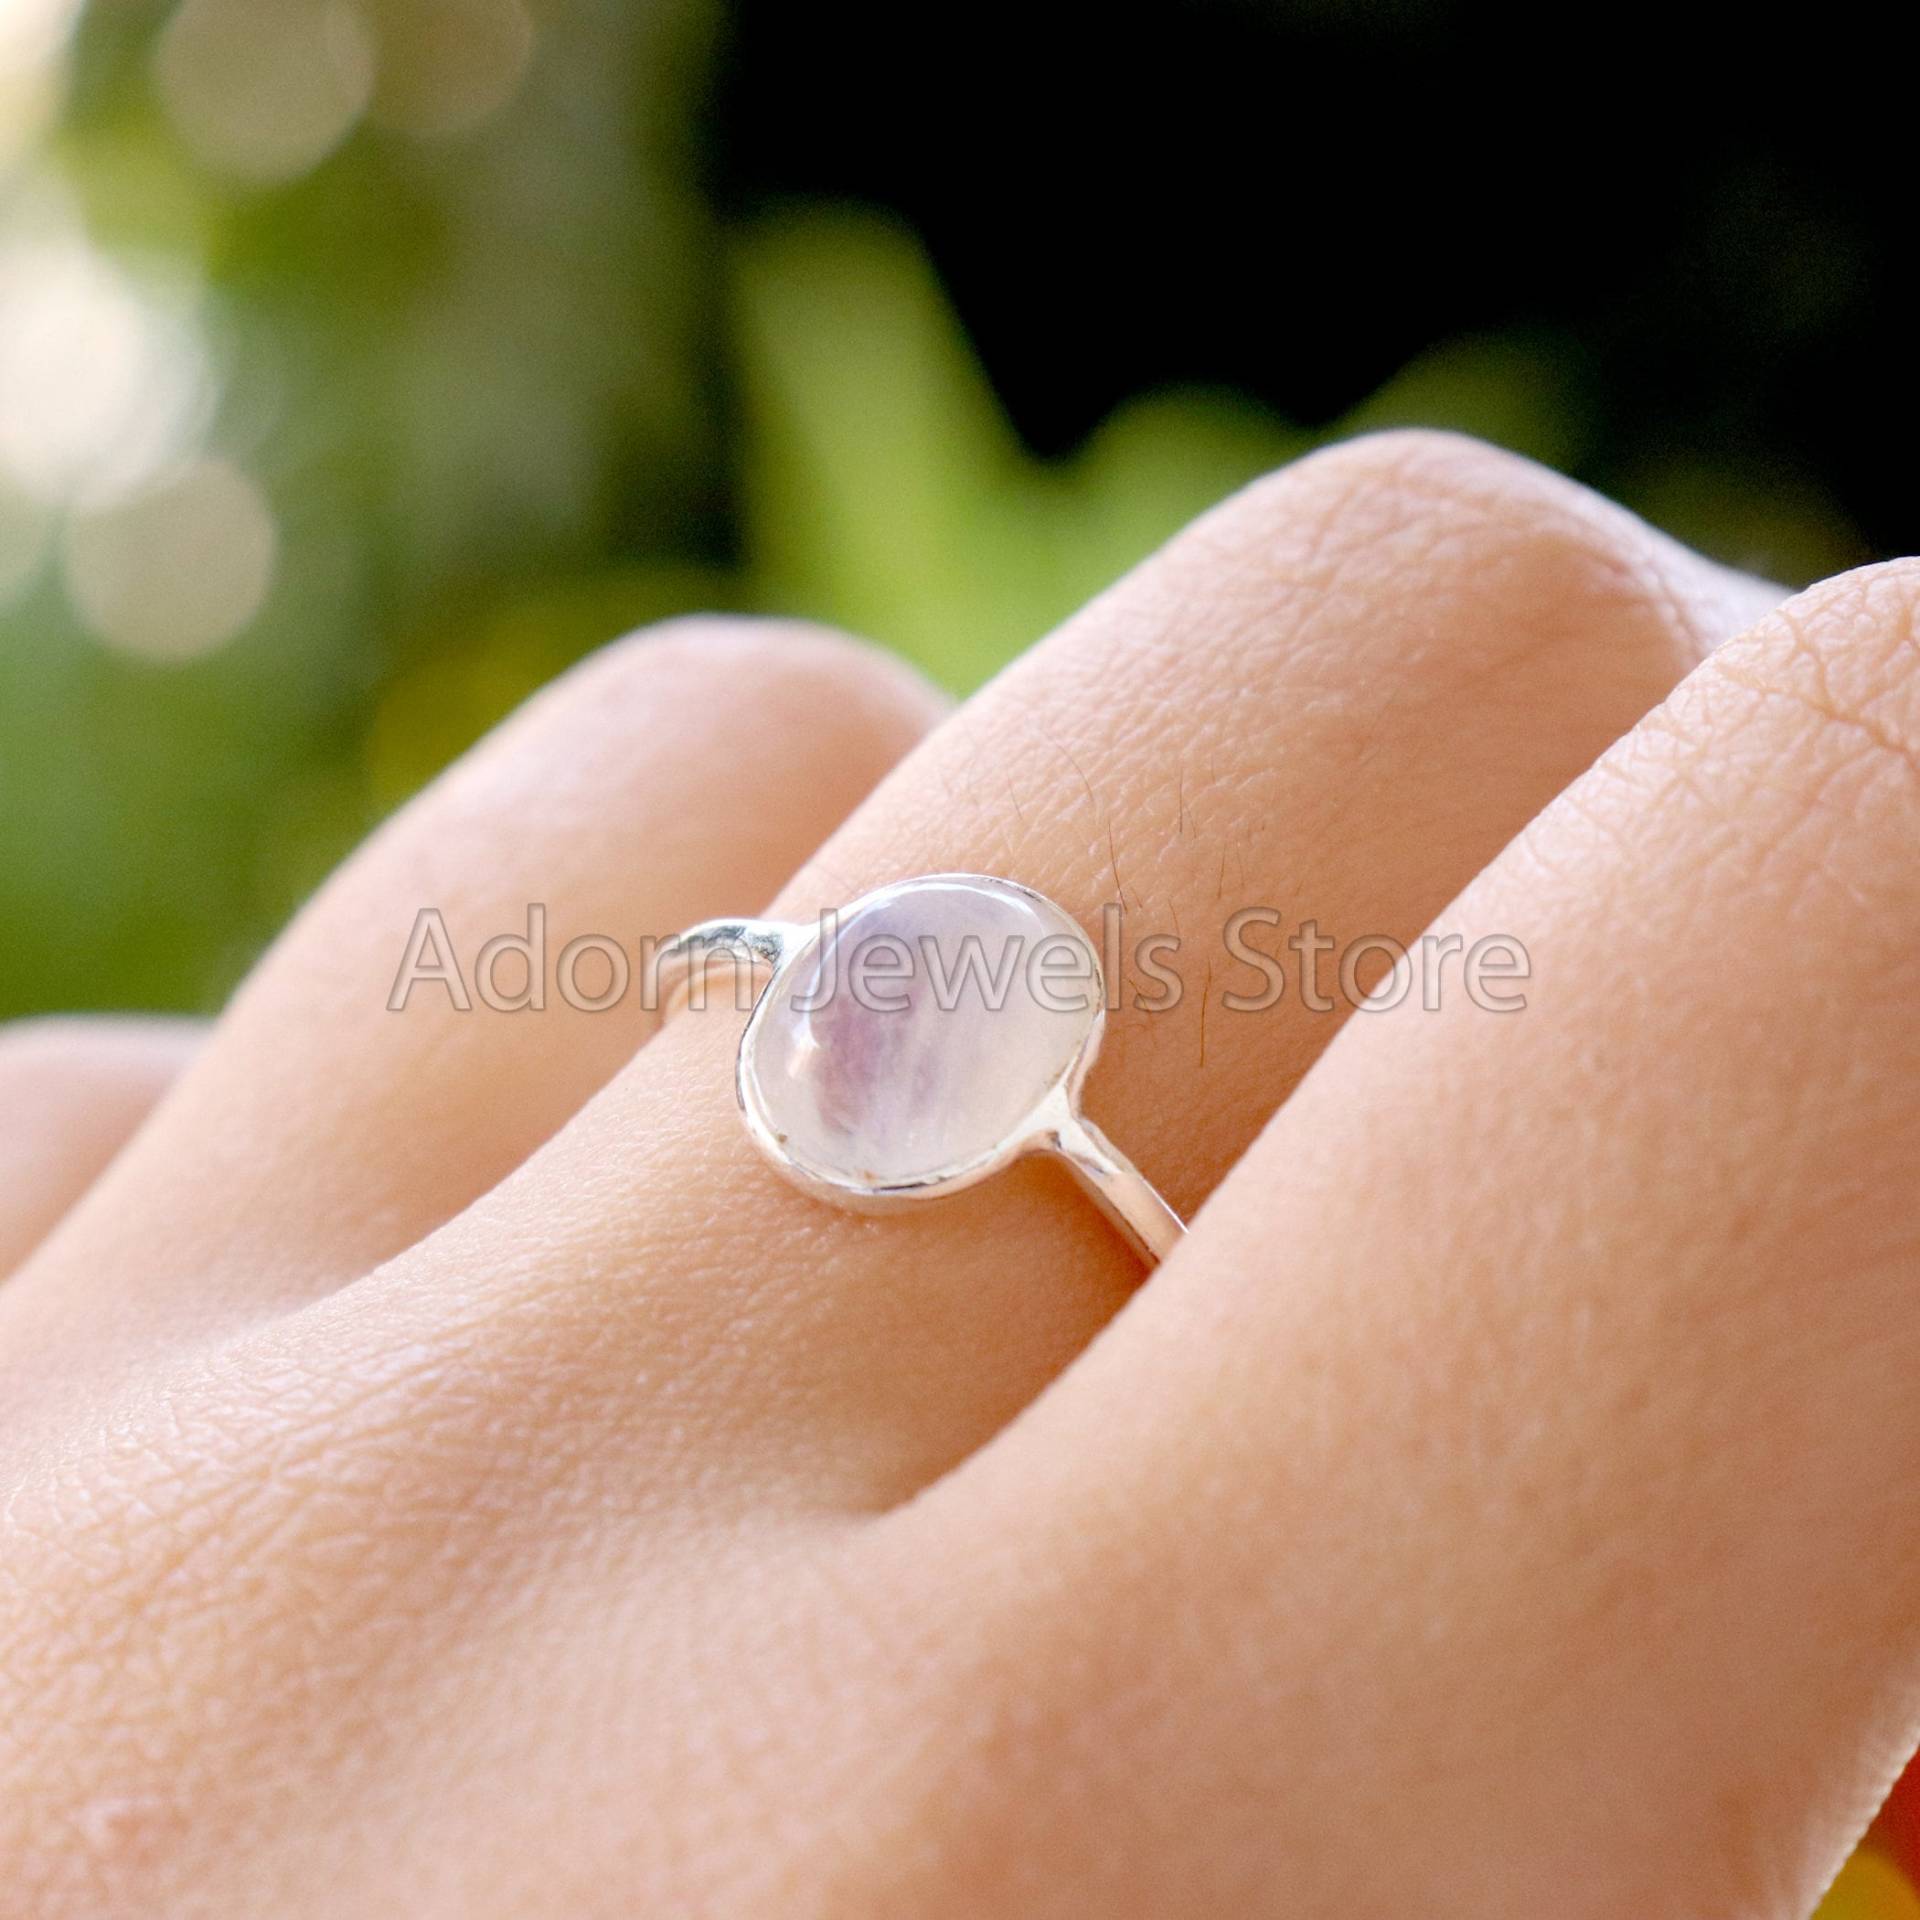 Regenbogen Mondstein Ring, Minimalist 925 Sterling Silber Handgemachter Ehering, Ring Für Mädchen, Kleiner von ParvatiSilver